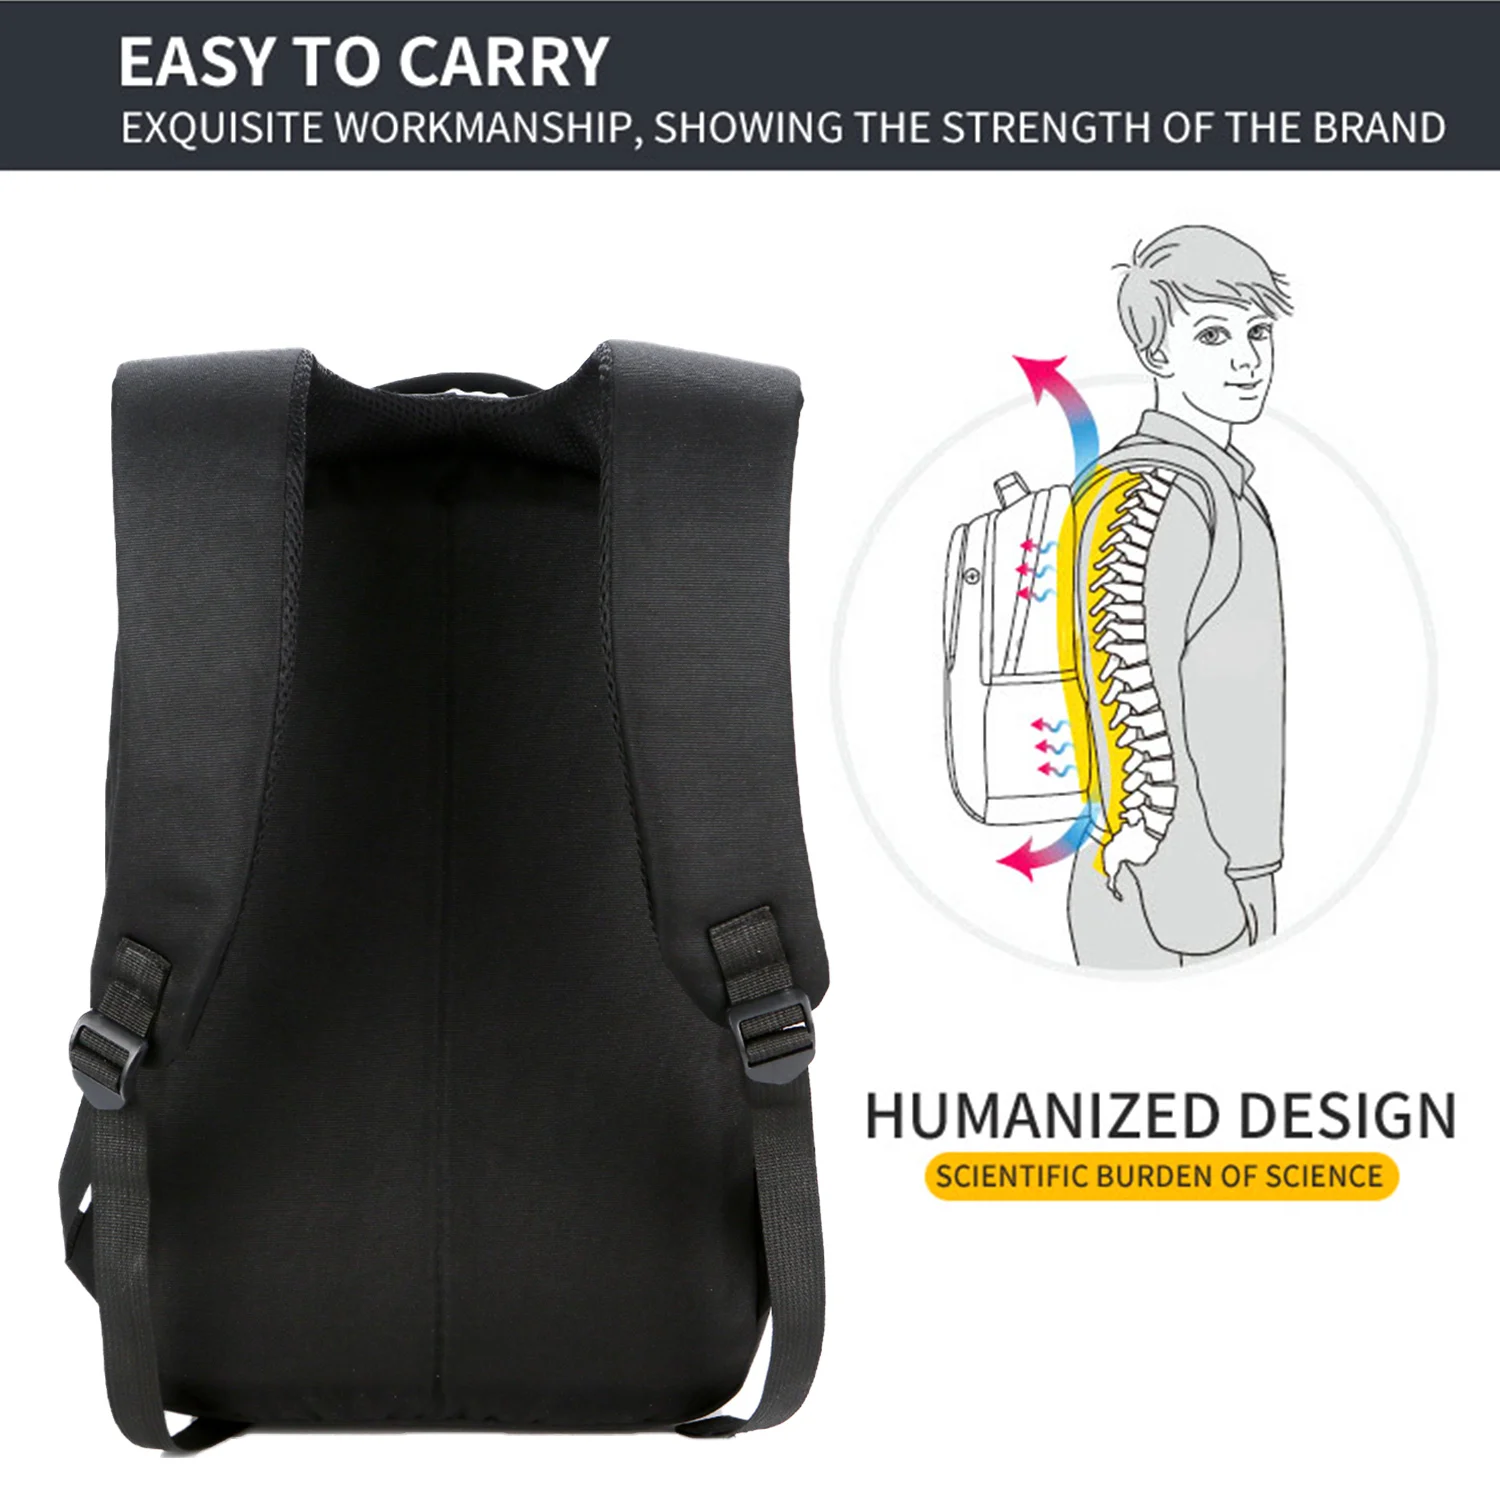 Besegad бизнес путешествия портативный ультра-легкий рюкзак для ноутбука большой емкости школьная сумка рюкзак для мужчин